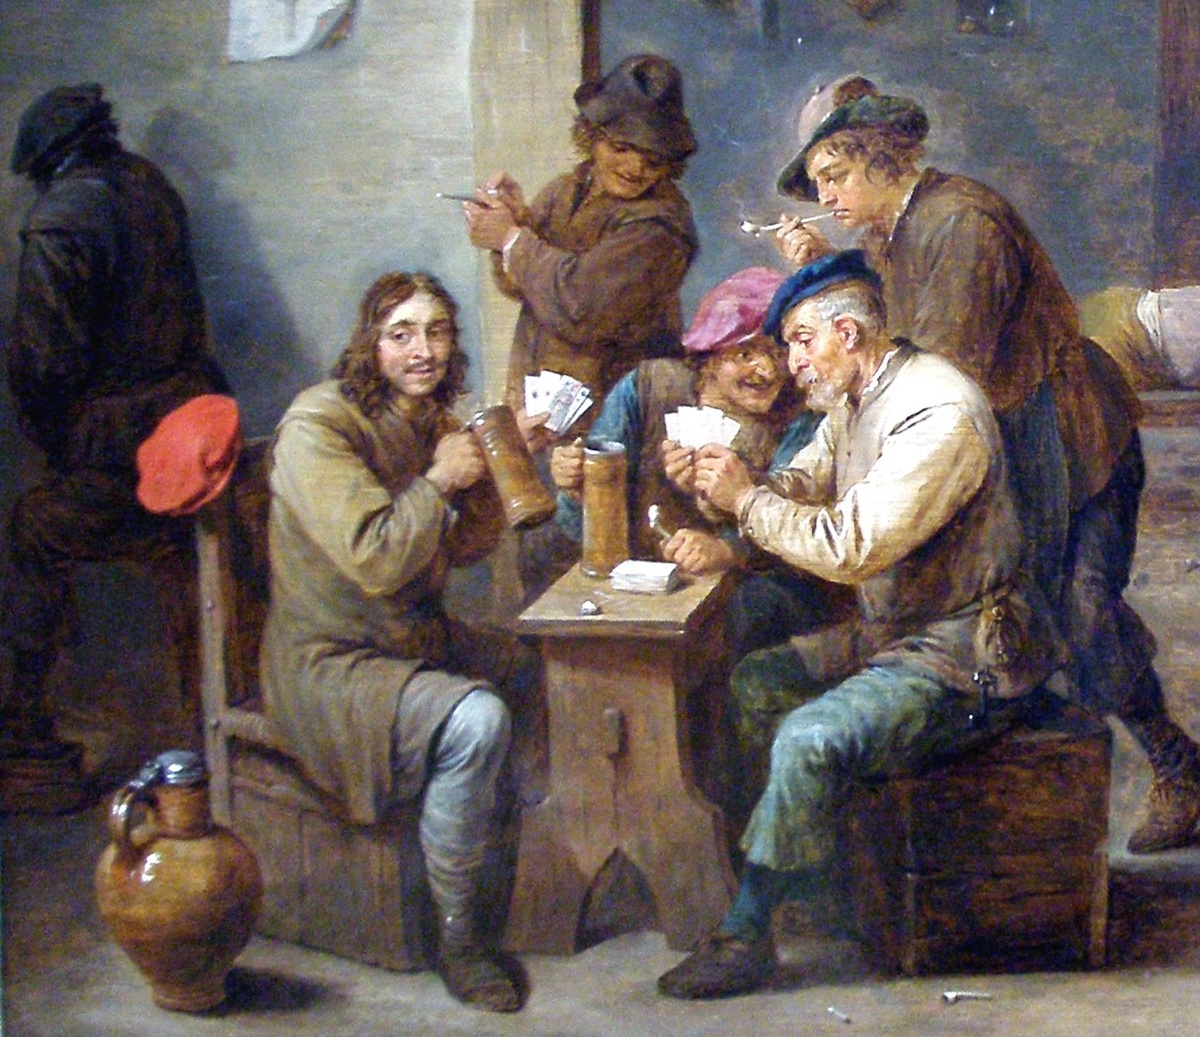 Gemälde mit Wirtshausszene aus dem 17. Jahrhundert. Männer sitzen an einem Tisch, trinken, rauchen und spielen Karten. Im Hintergrund schläft ein Mann auf einer Bank, weitere Männer unterhalten sich. Jemand kommt zur Tür herein.  © Wikimedia